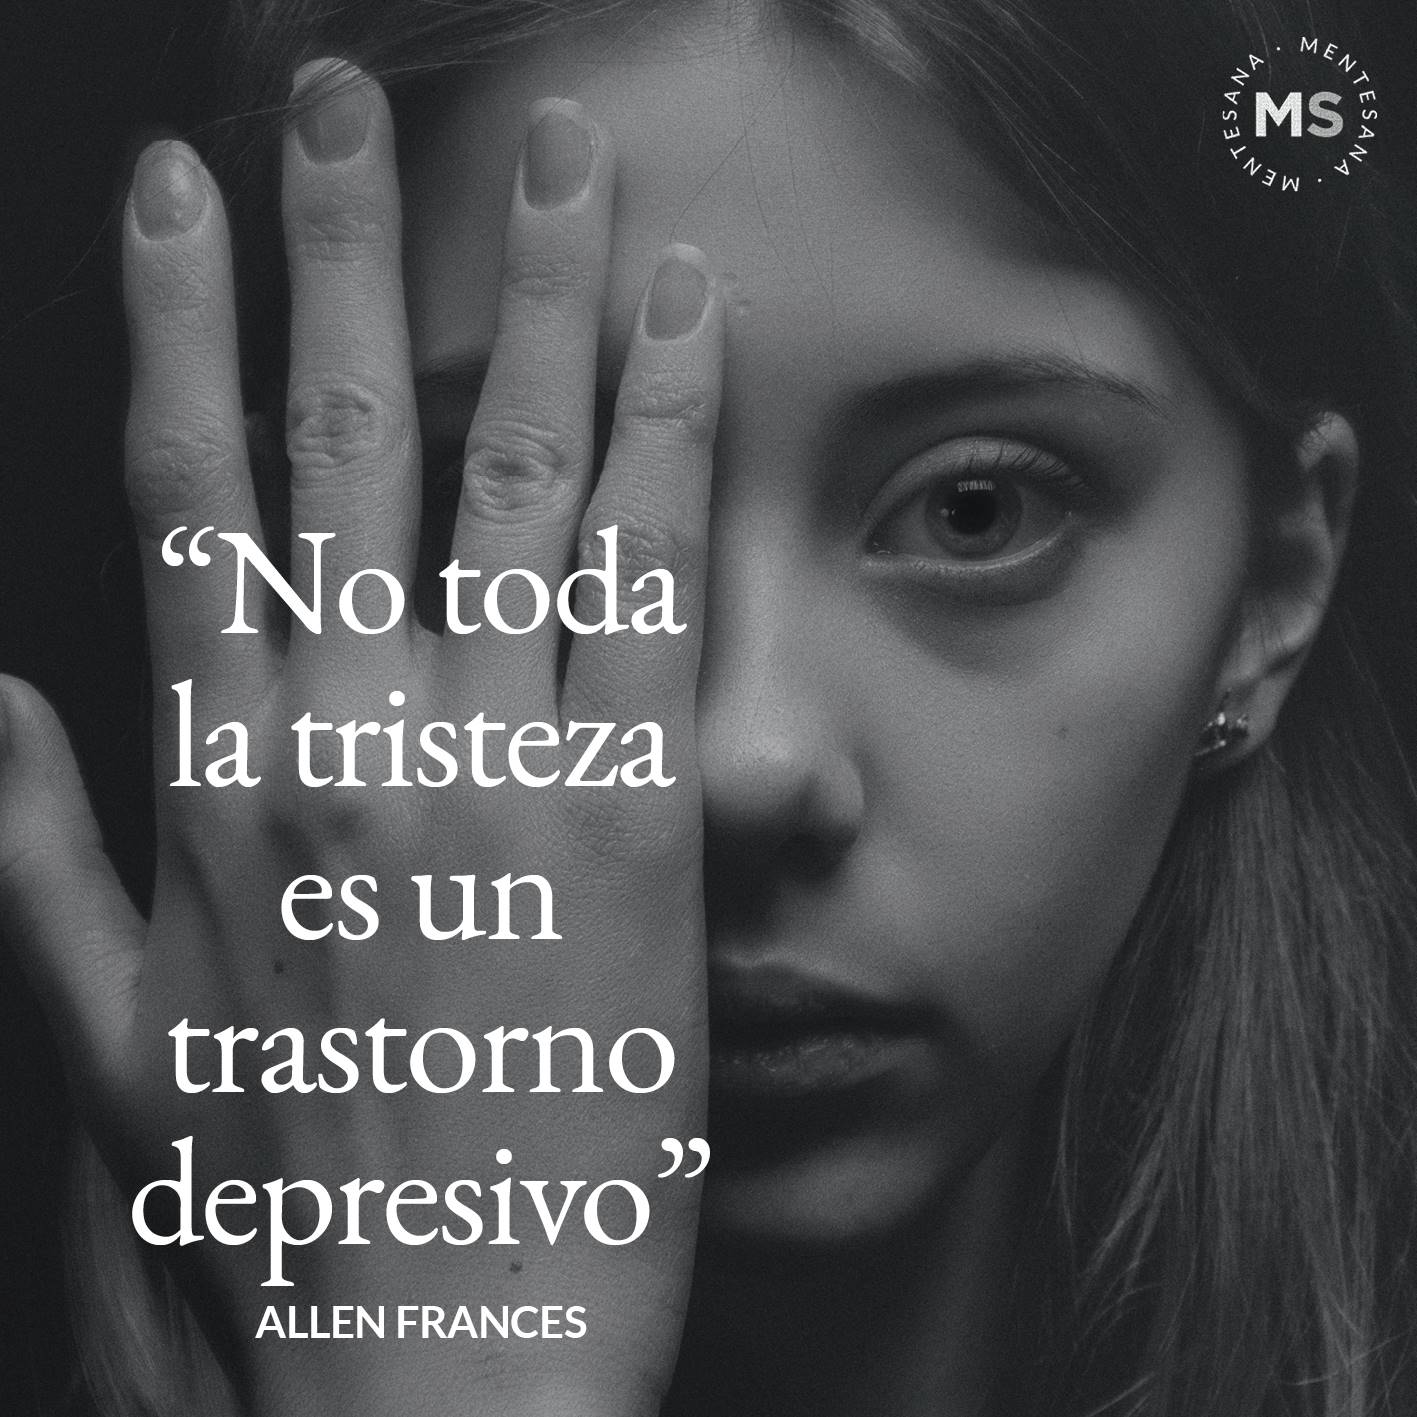 FRASES DIA DE LA DEPRESION10. "No toda la tristeza es un trastorno depresivo.” Allen Frances